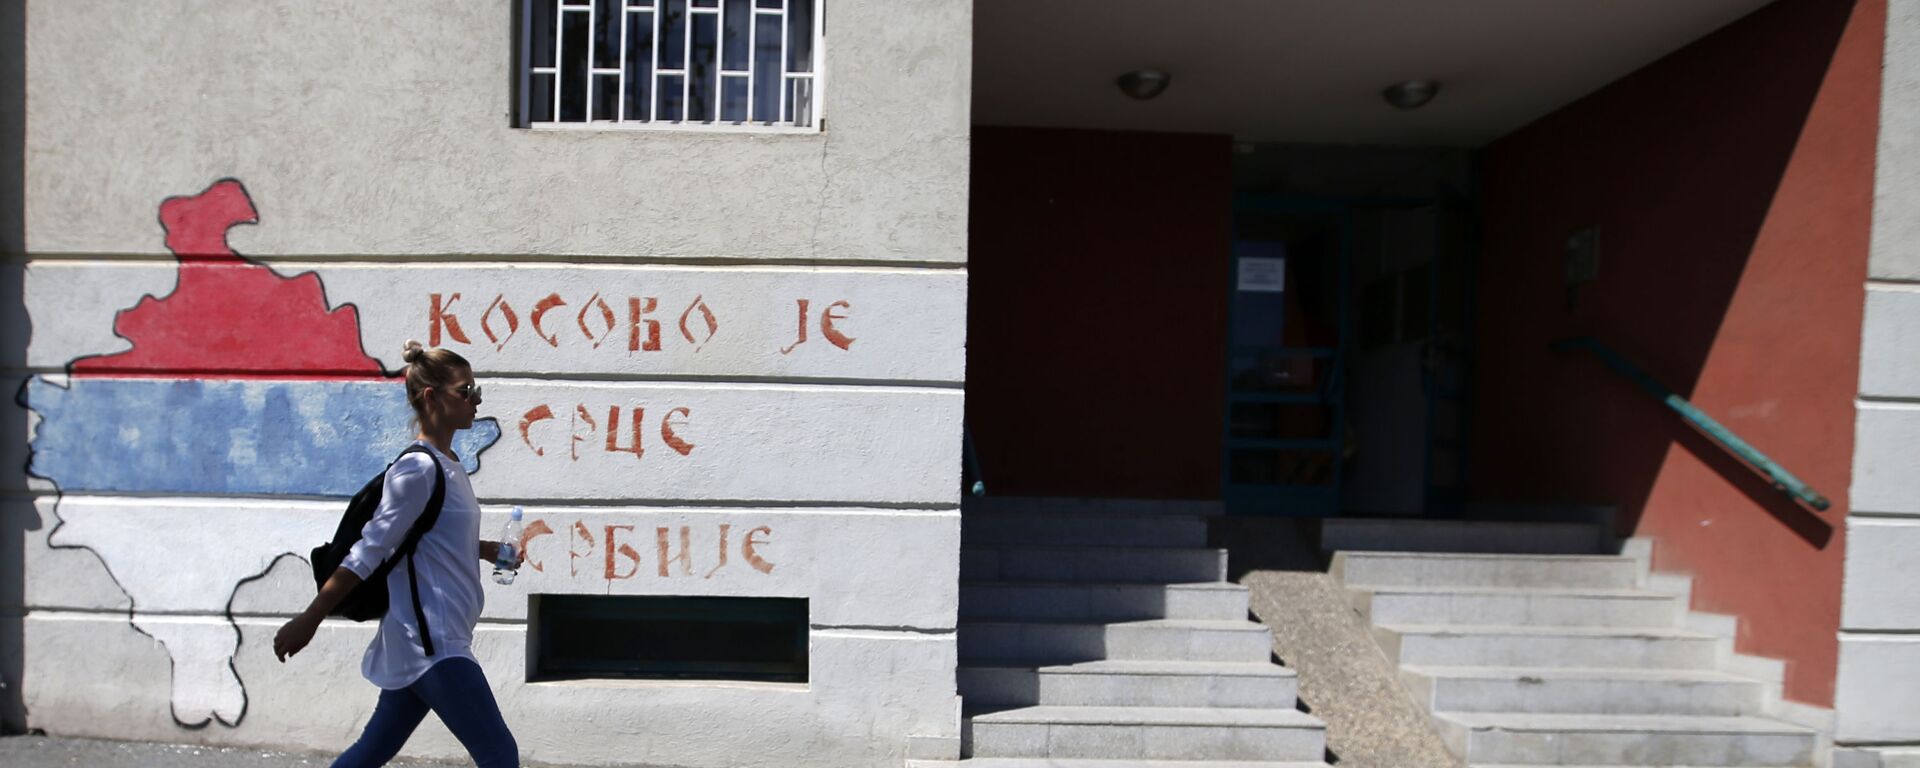 Grafit u Beogradu – Kosovo je srce Srbije - Sputnik Srbija, 1920, 08.07.2021